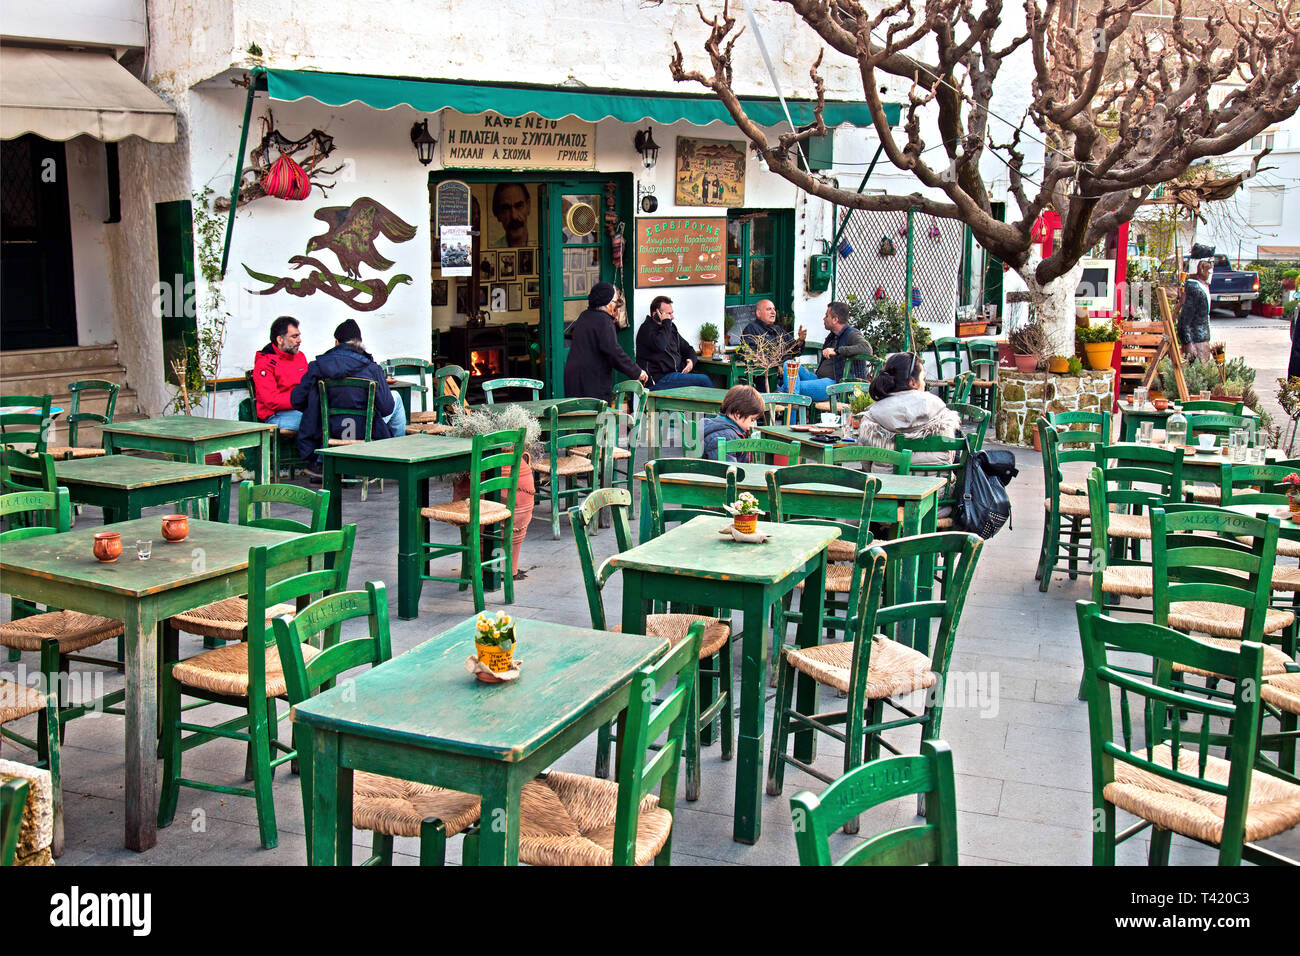 the traditional coffee shop of the late Michalis Skoulas 'I Plateia tou Syntagmatos' at Perachori neighborhood, Anogeia village, Crete, Greece. Stock Photo